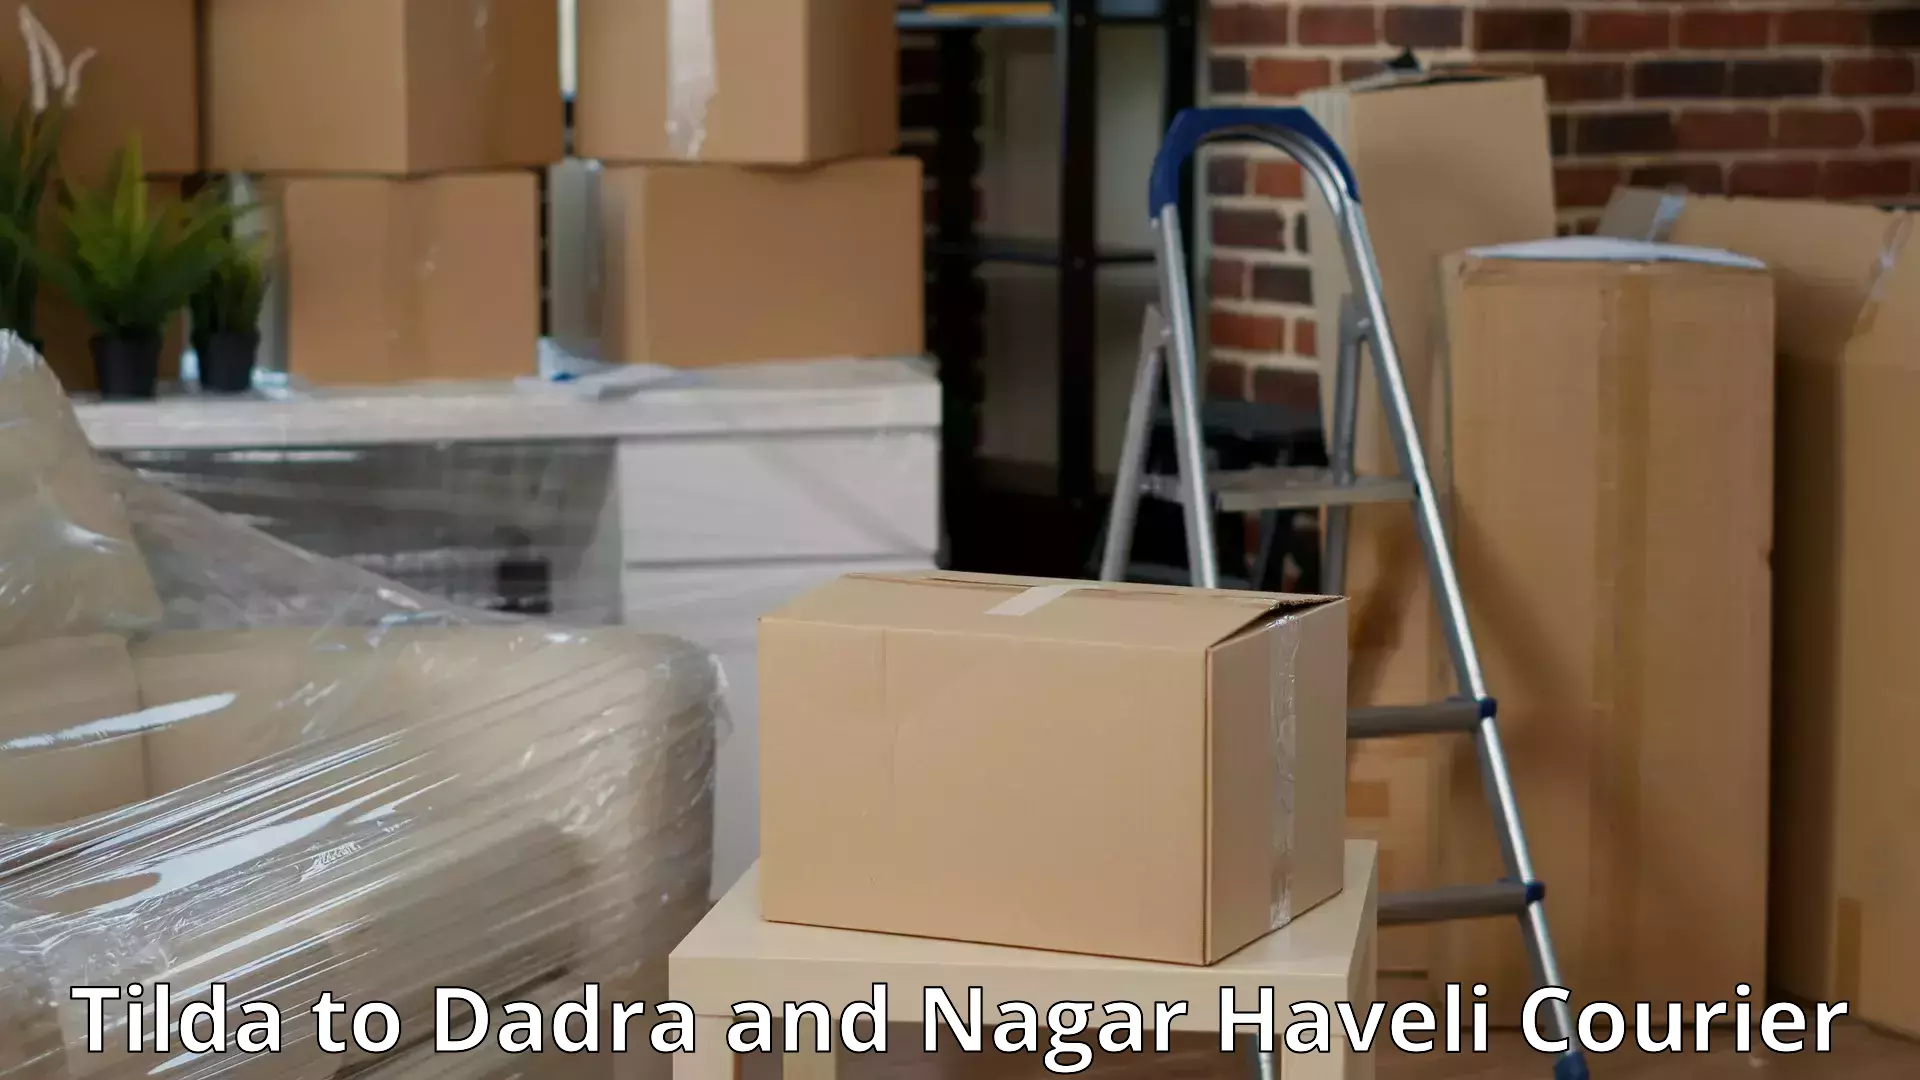 Local household movers Tilda to Dadra and Nagar Haveli